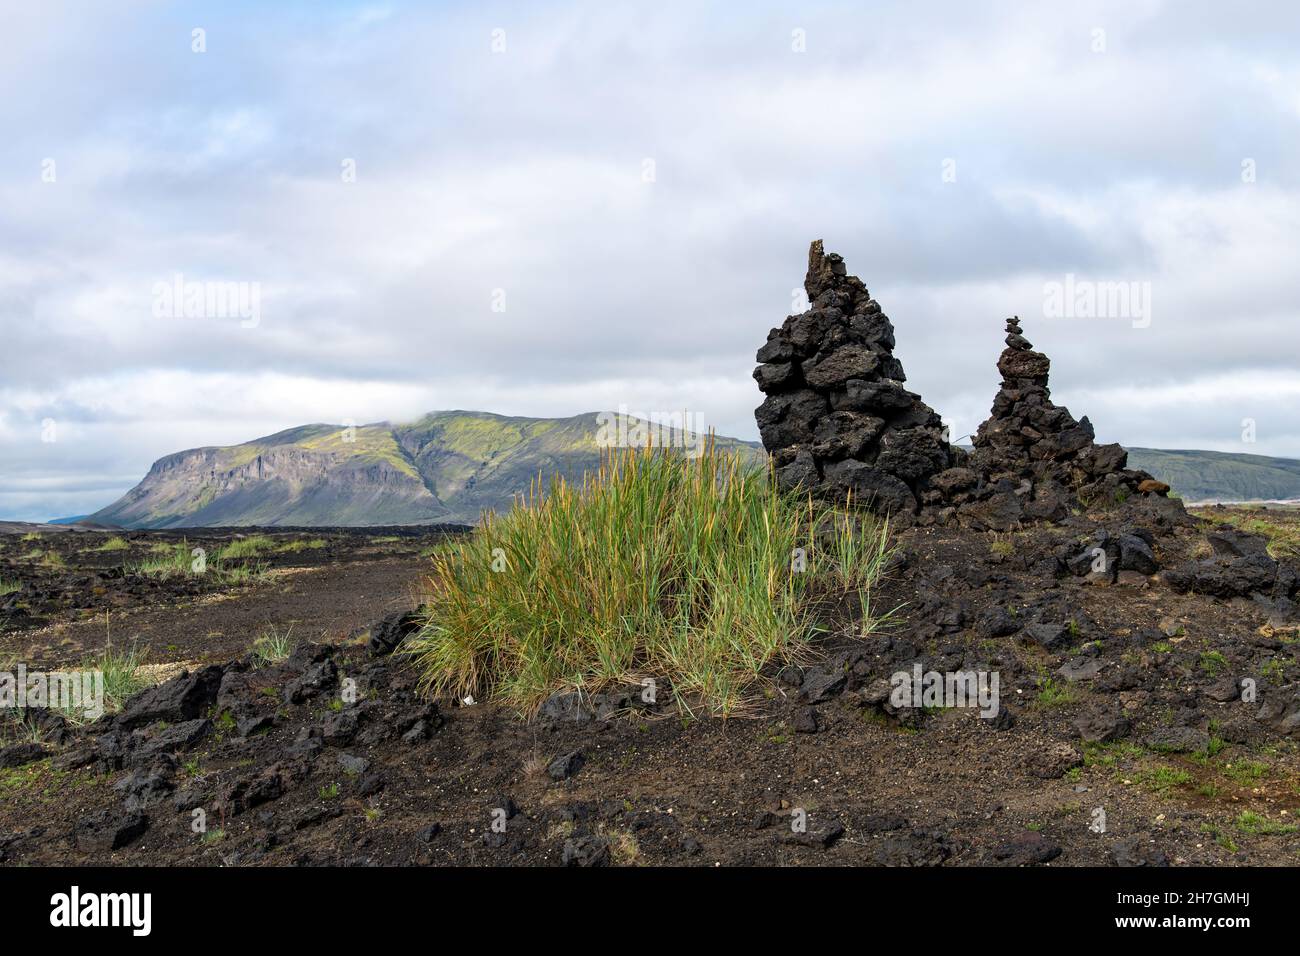 Vista ad angolo basso di alcune erbe in un paesaggio altrimenti arido di roccia lavica dal vicino vulcano Katla sull'Islanda Foto Stock